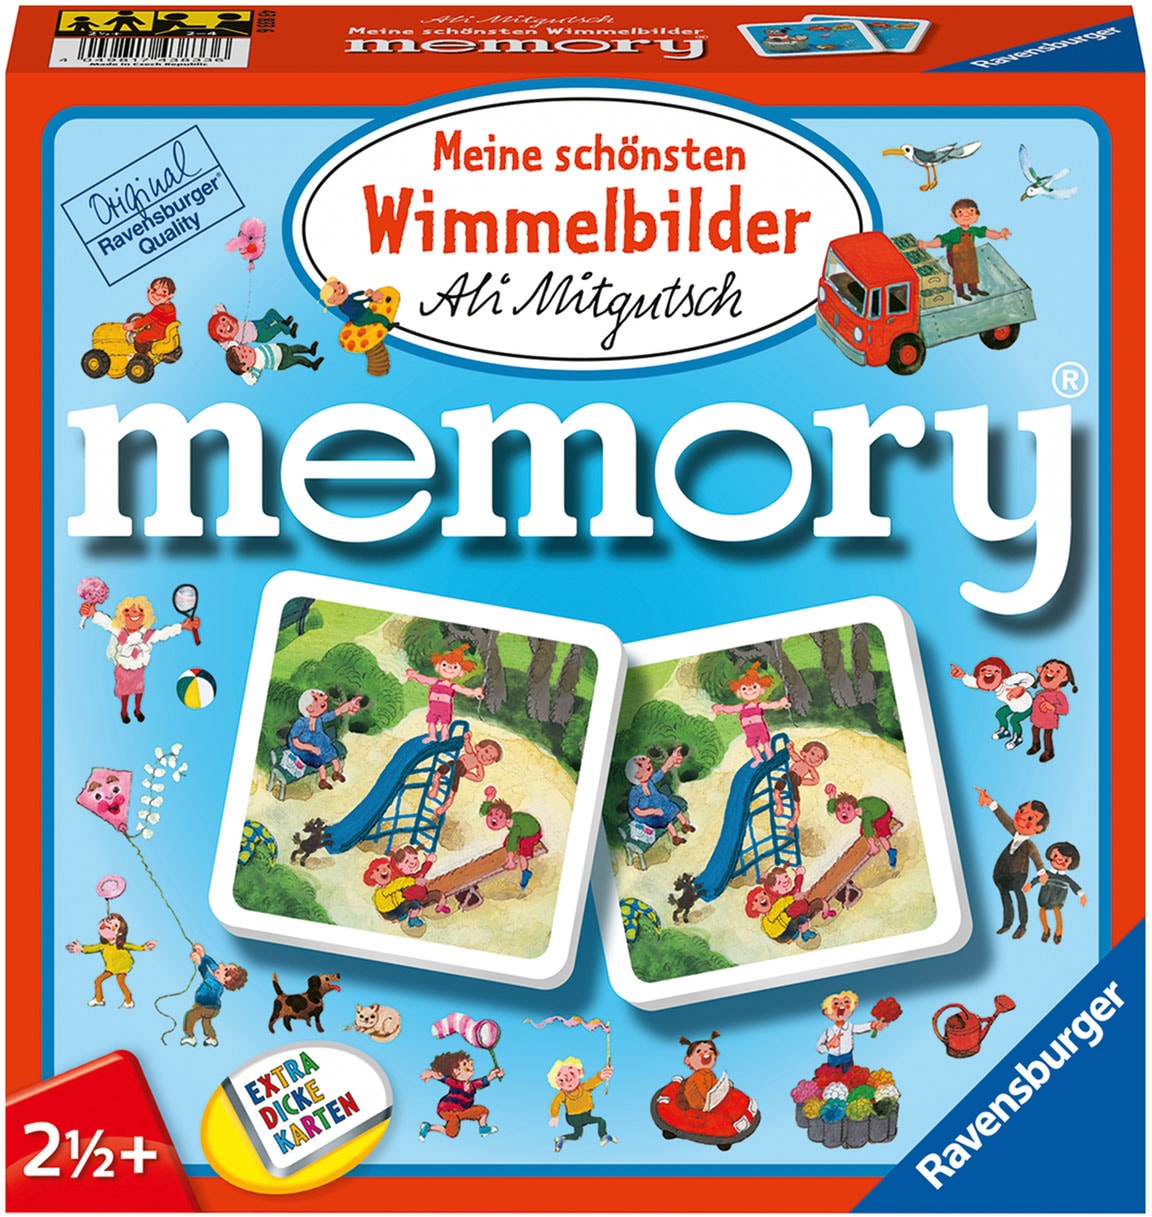 Spiel »Meine schönsten Wimmelbilder memory®«, FSC® - schützt Wald - weltweit; Made in...